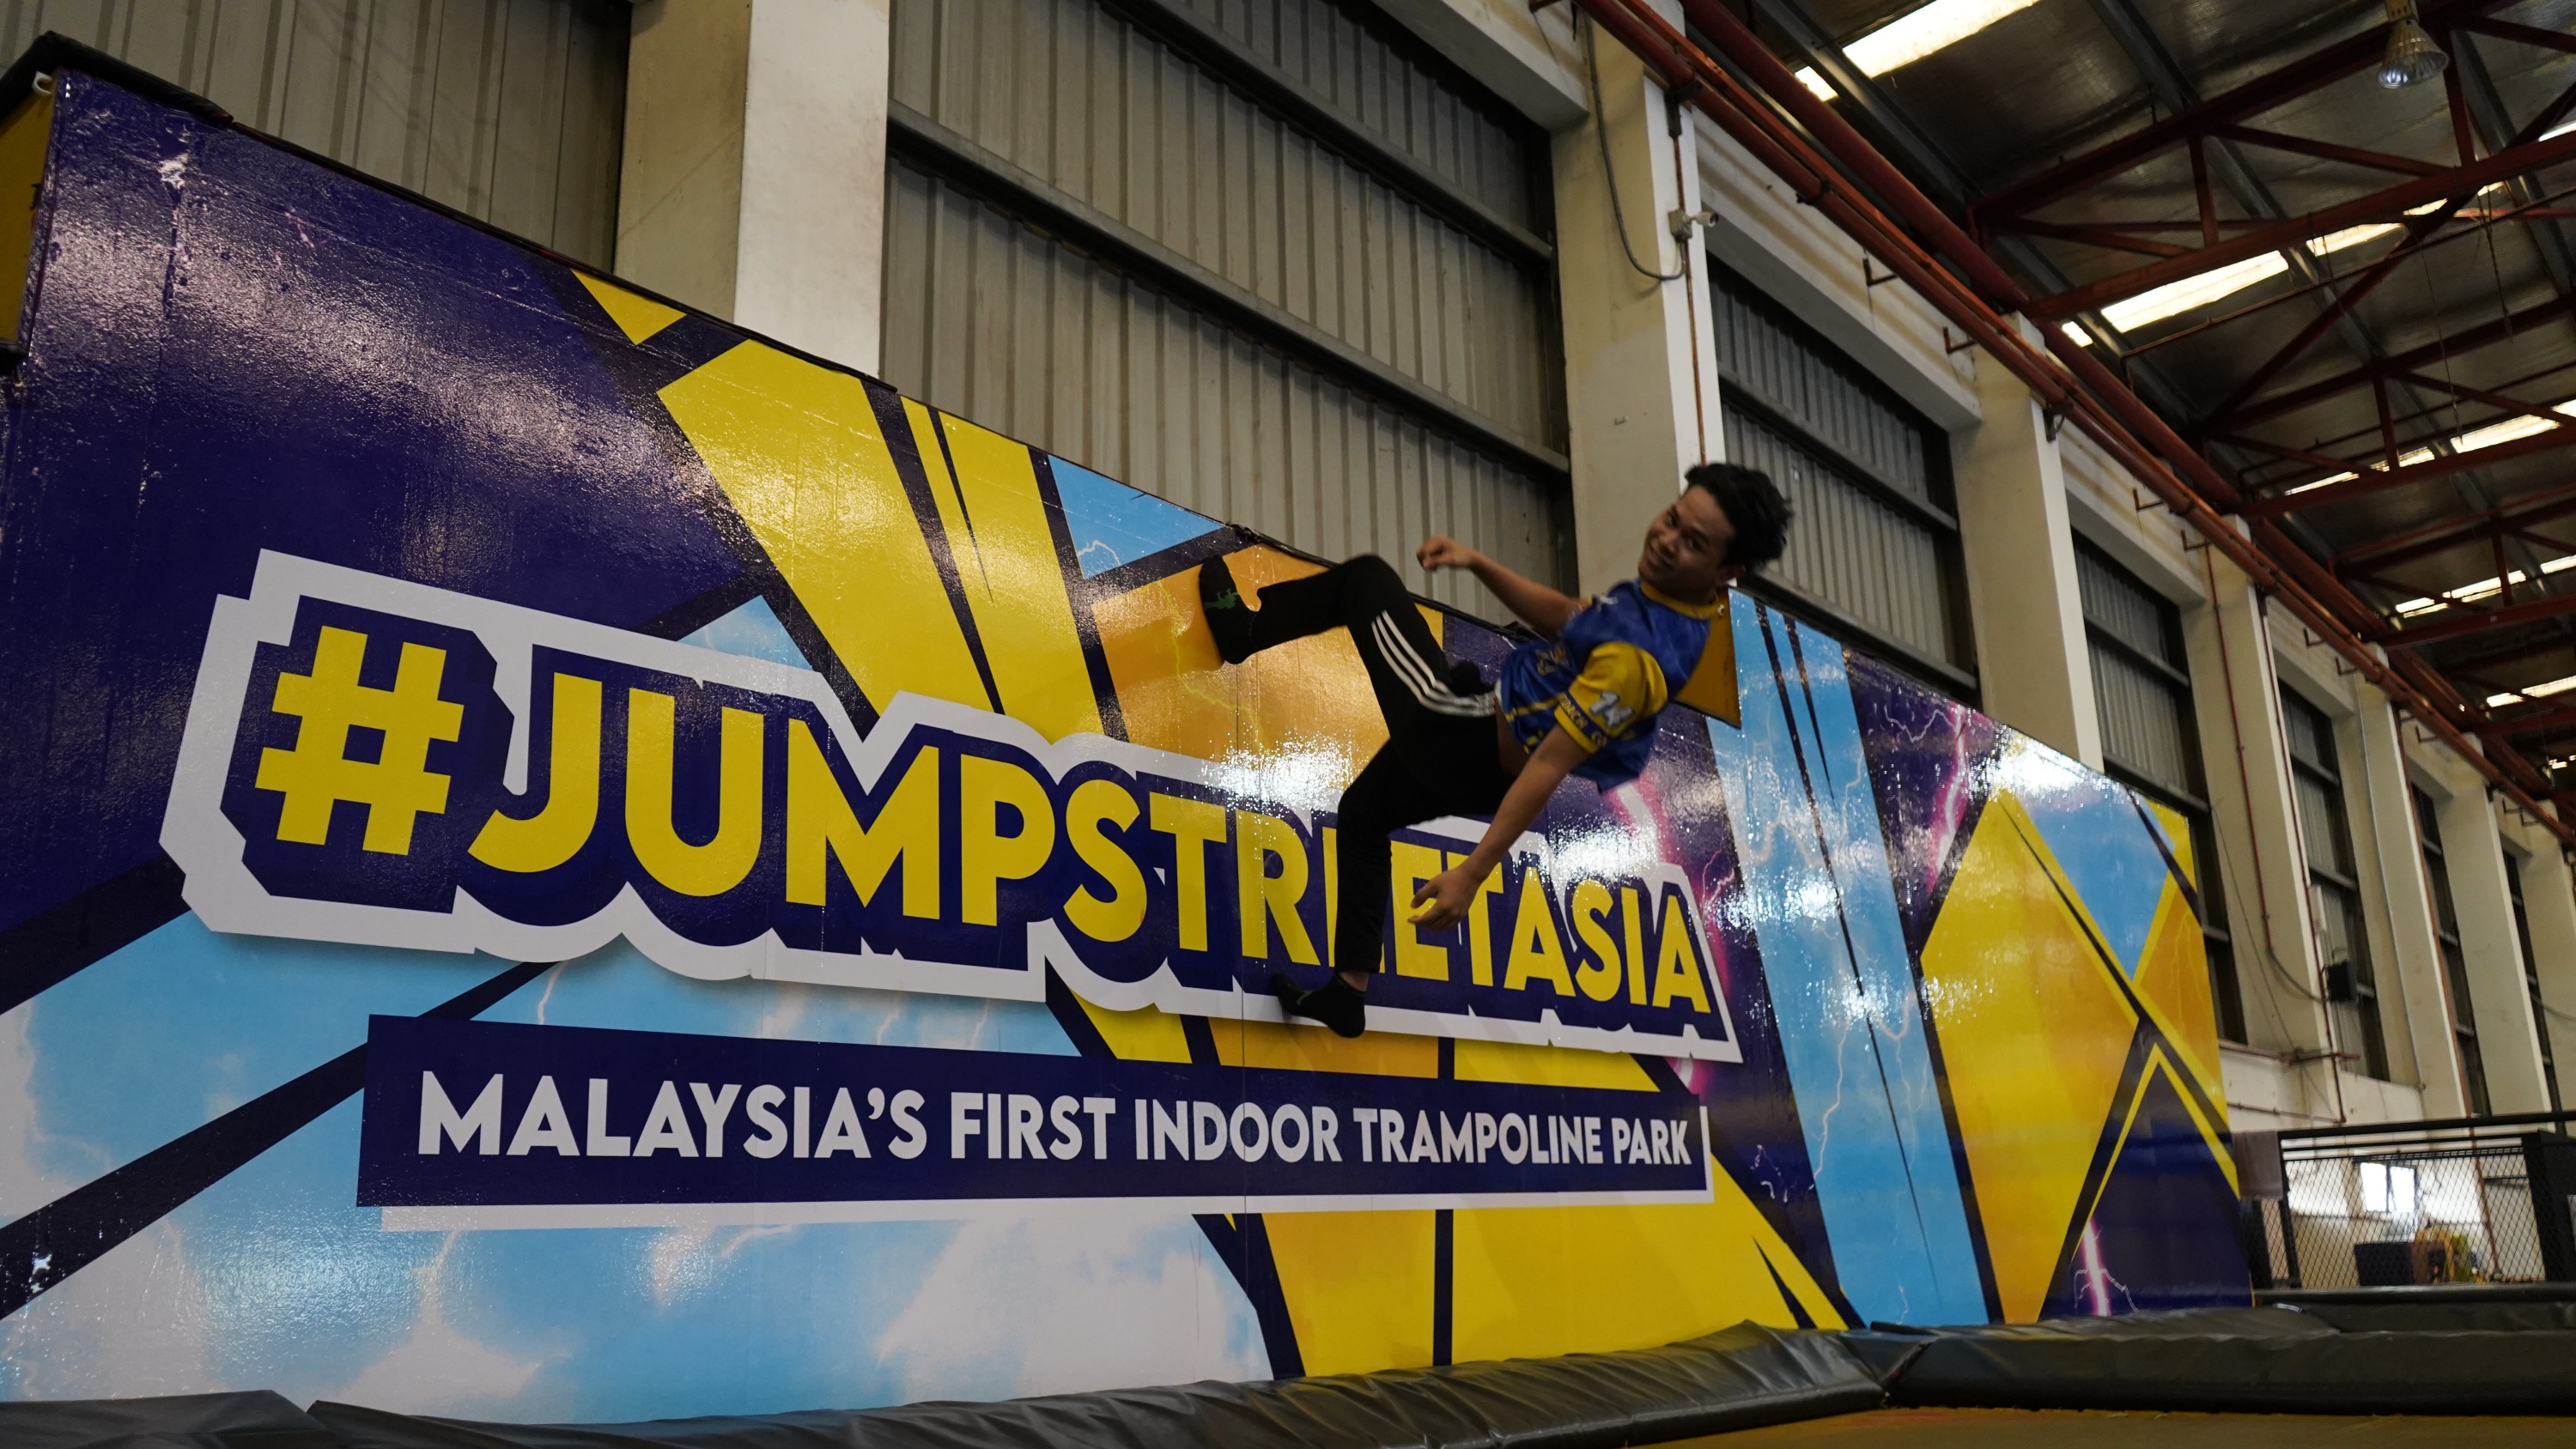 馬來西亞 Jump Street Trampoline Park 室內彈跳床樂園門票